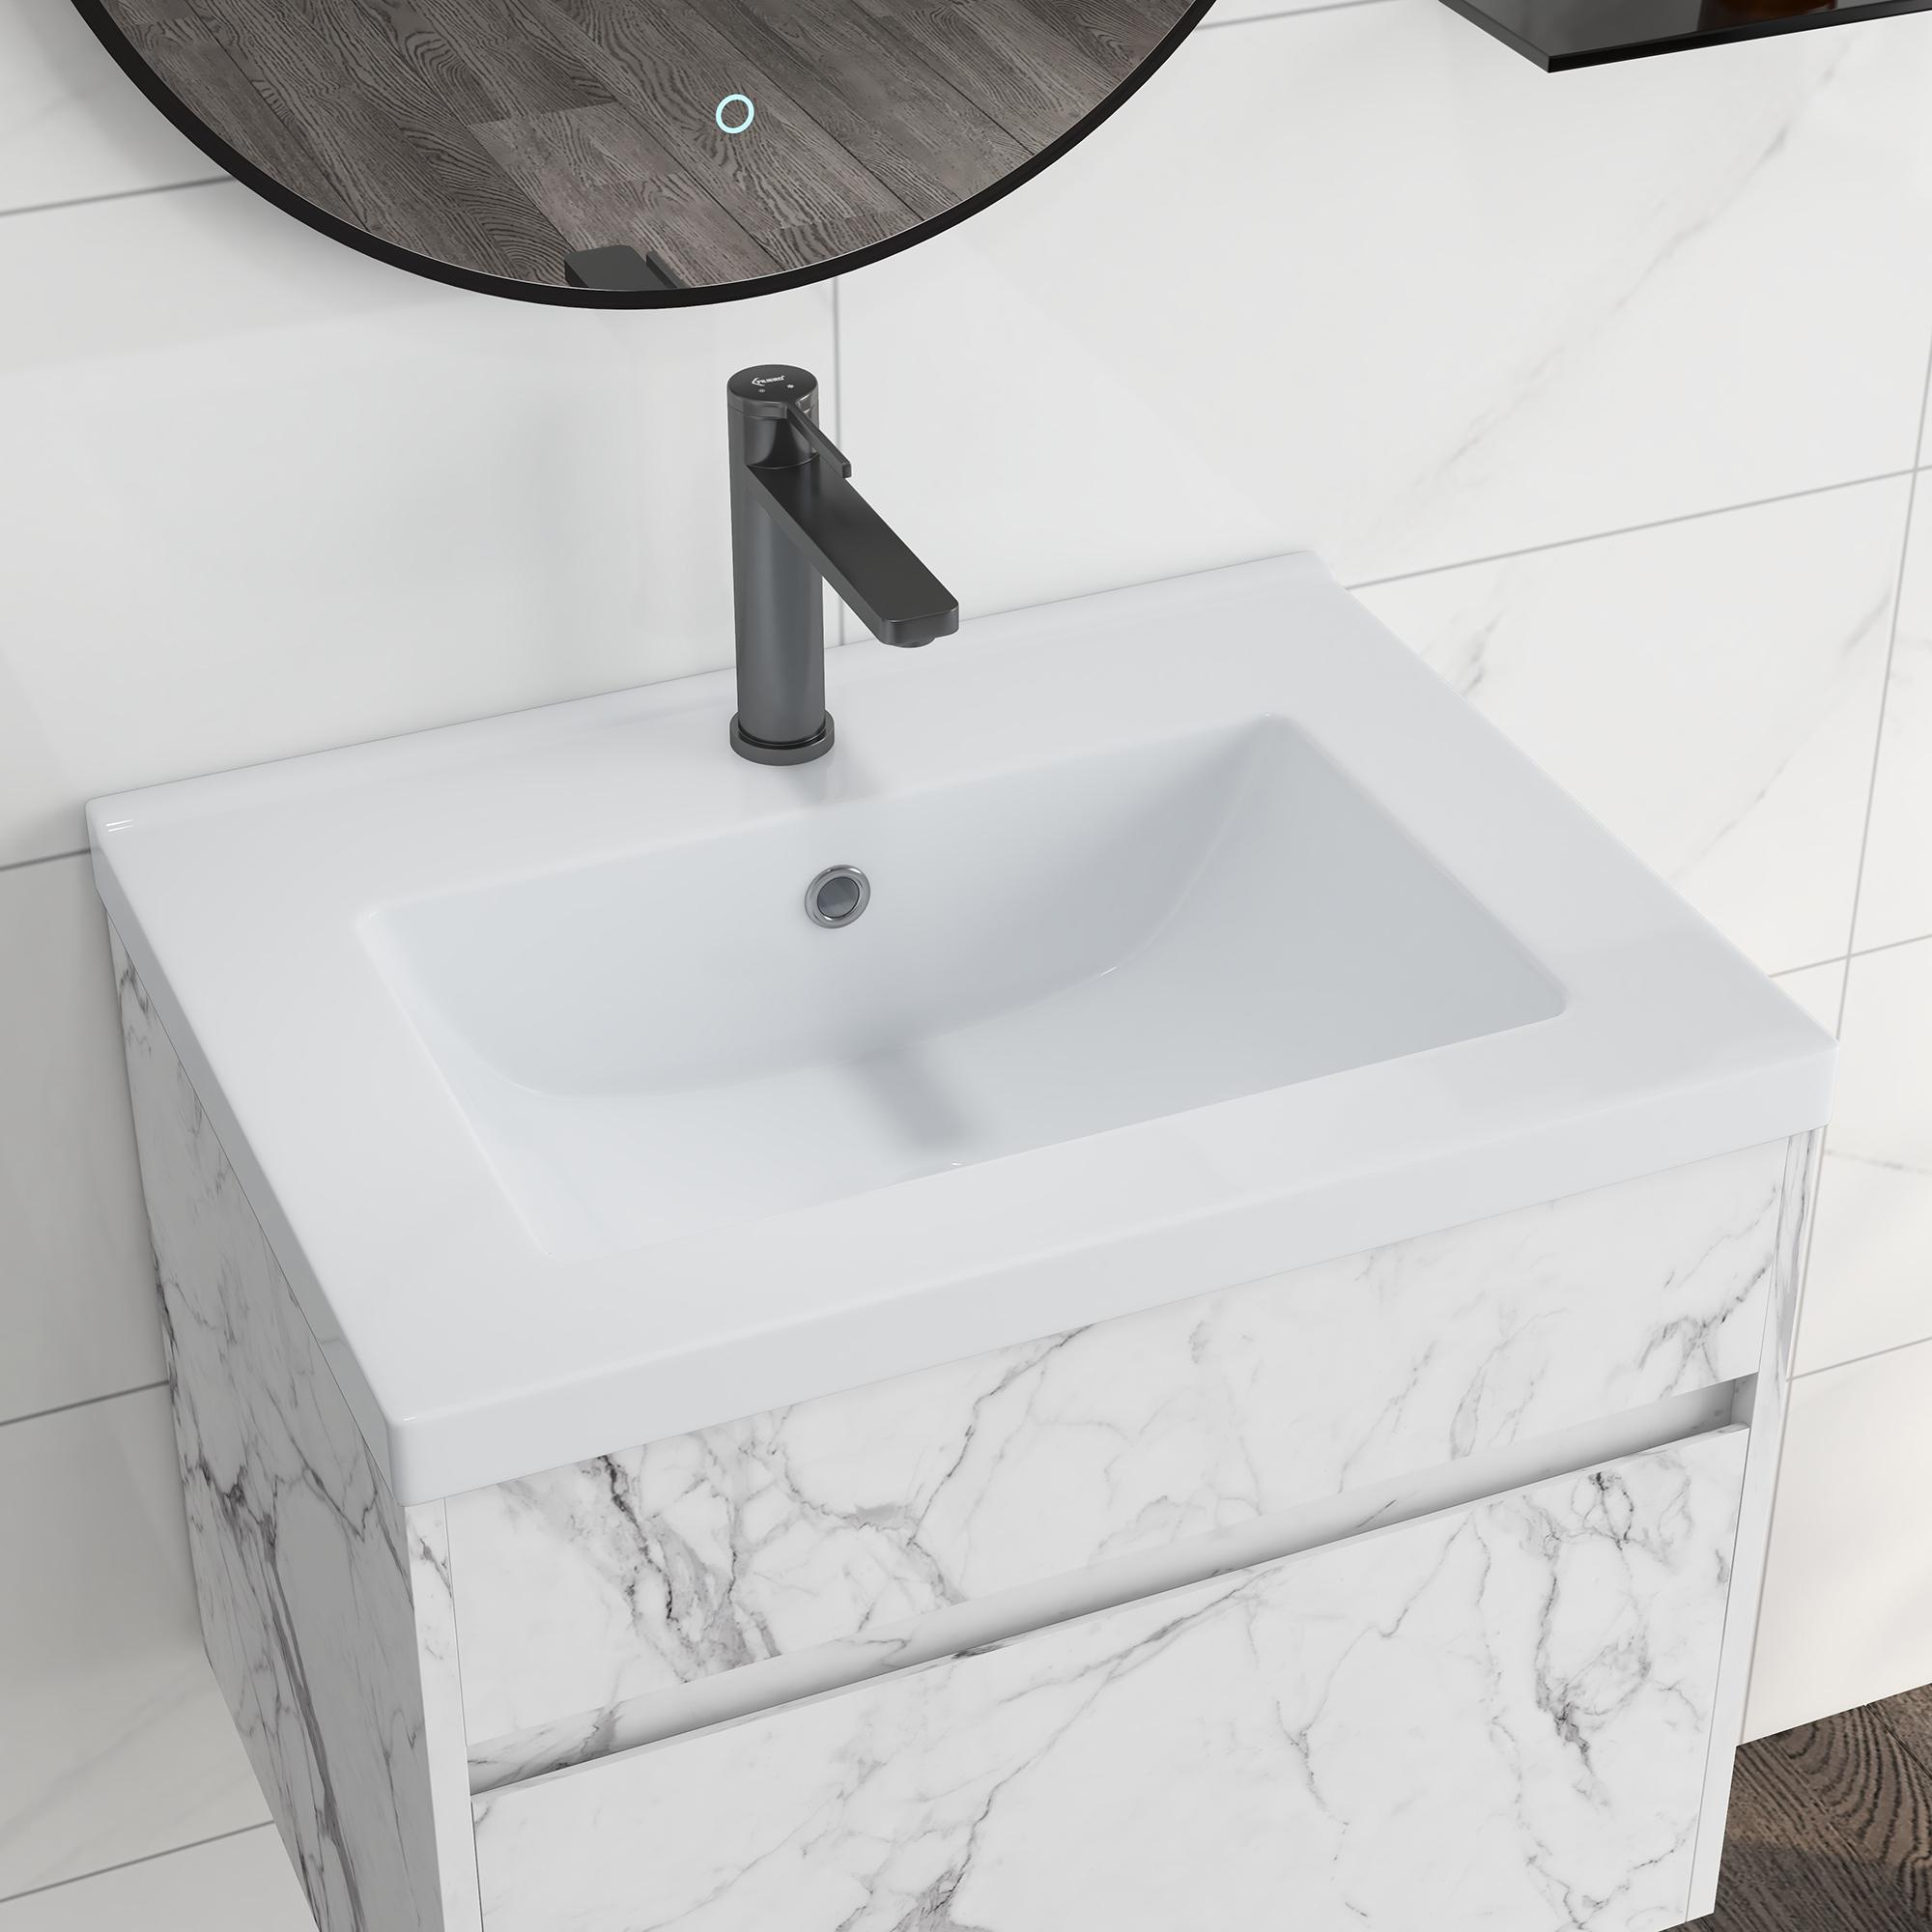 Meuble sous-vasque suspendu - vasque céramique incluse - tiroir coulissant - dim. 60L x 45l x 45H cm - aspect marbre blanc